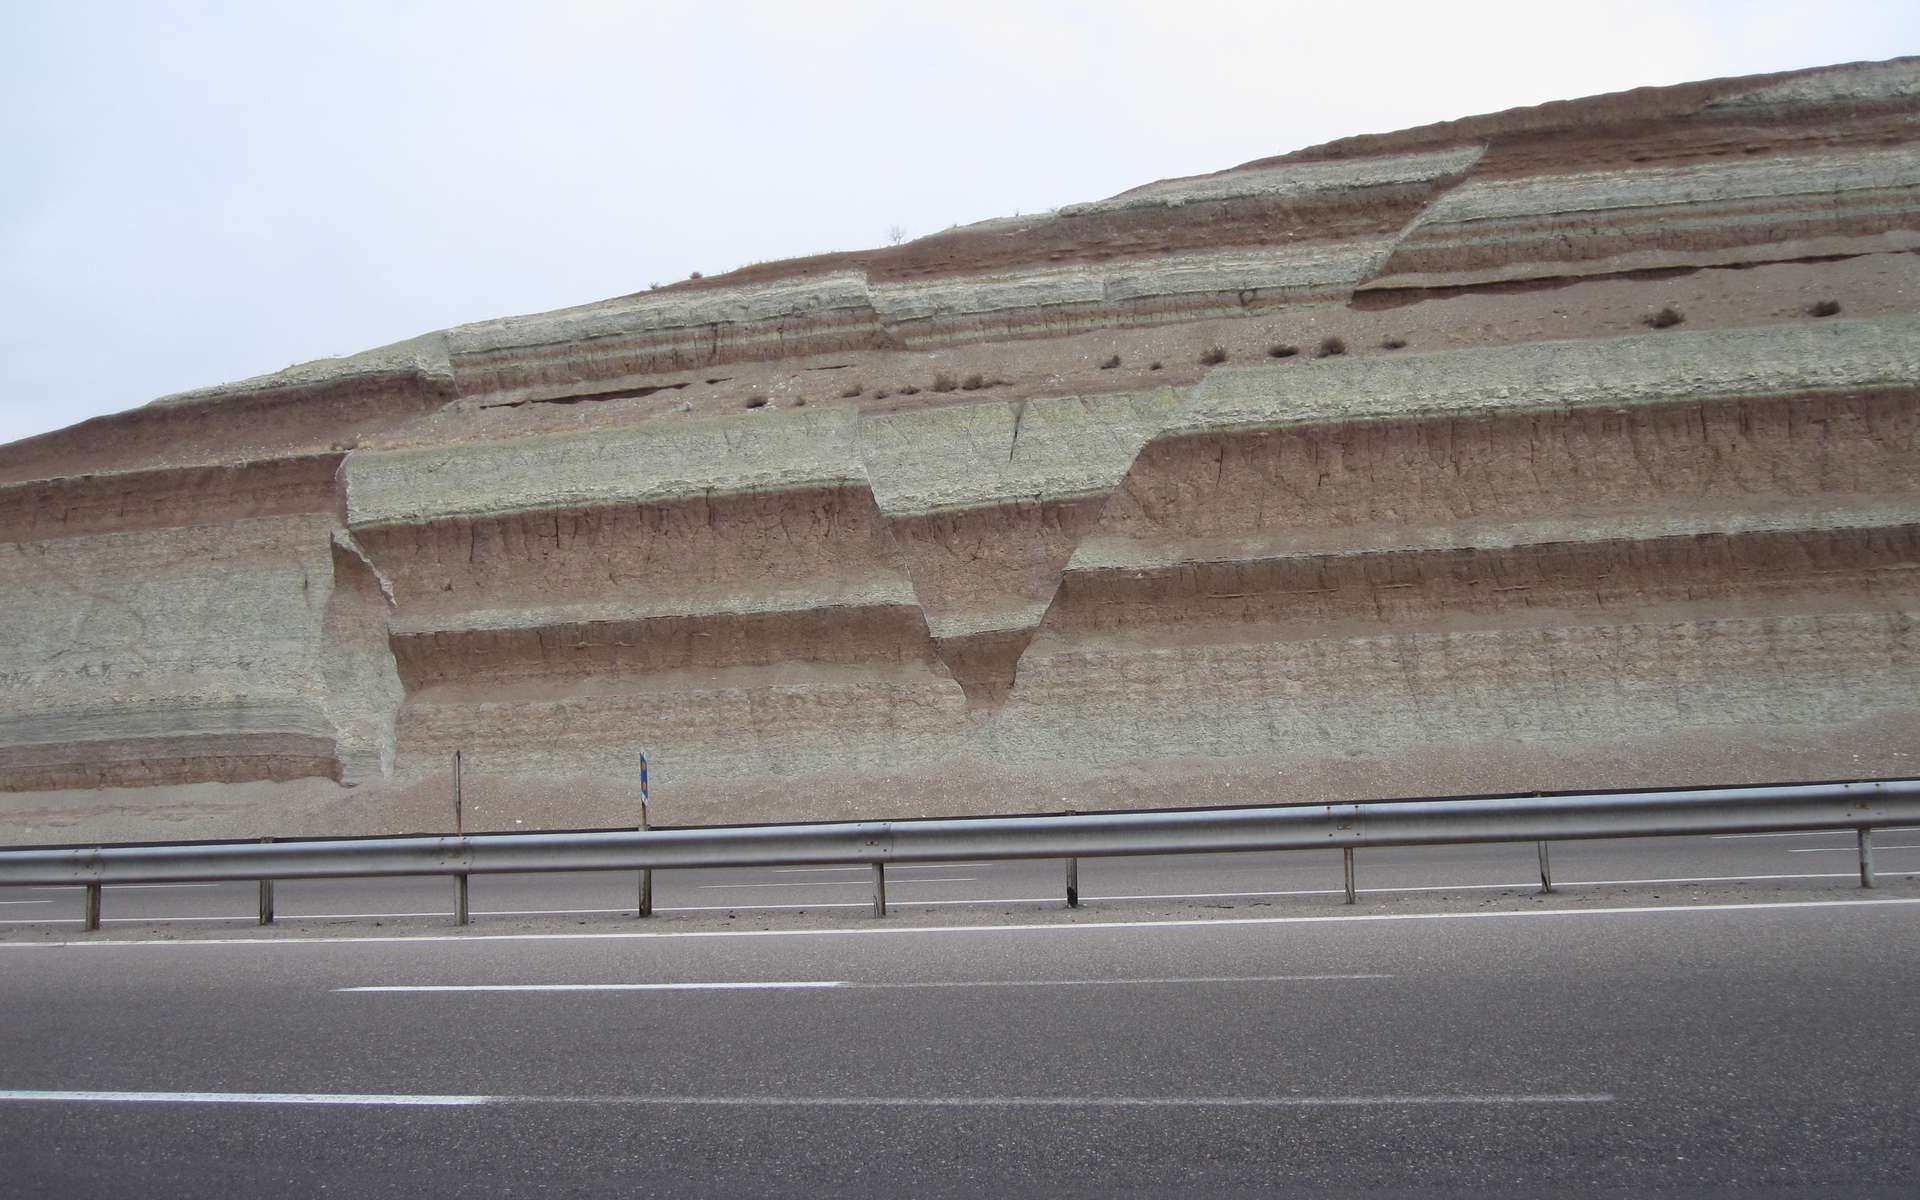 comment retrace t on l histoire tectonique grace aux sediments